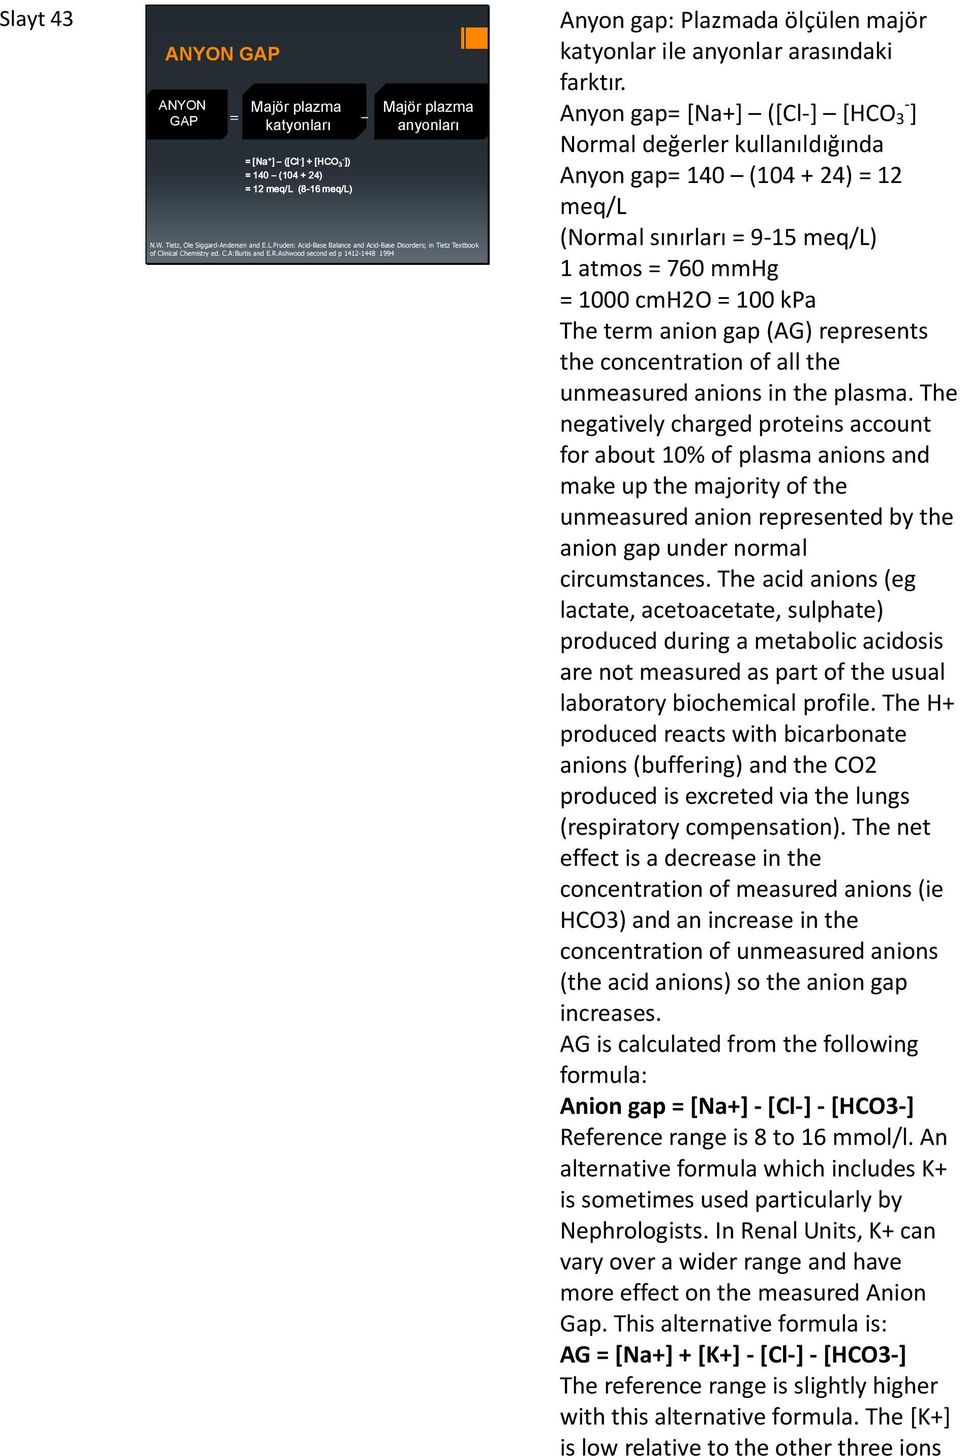 Ashwood second ed p 1412-1448 1994 Anyon gap: Plazmada ölçülen majör katyonlar ile anyonlar arasındaki farktır.